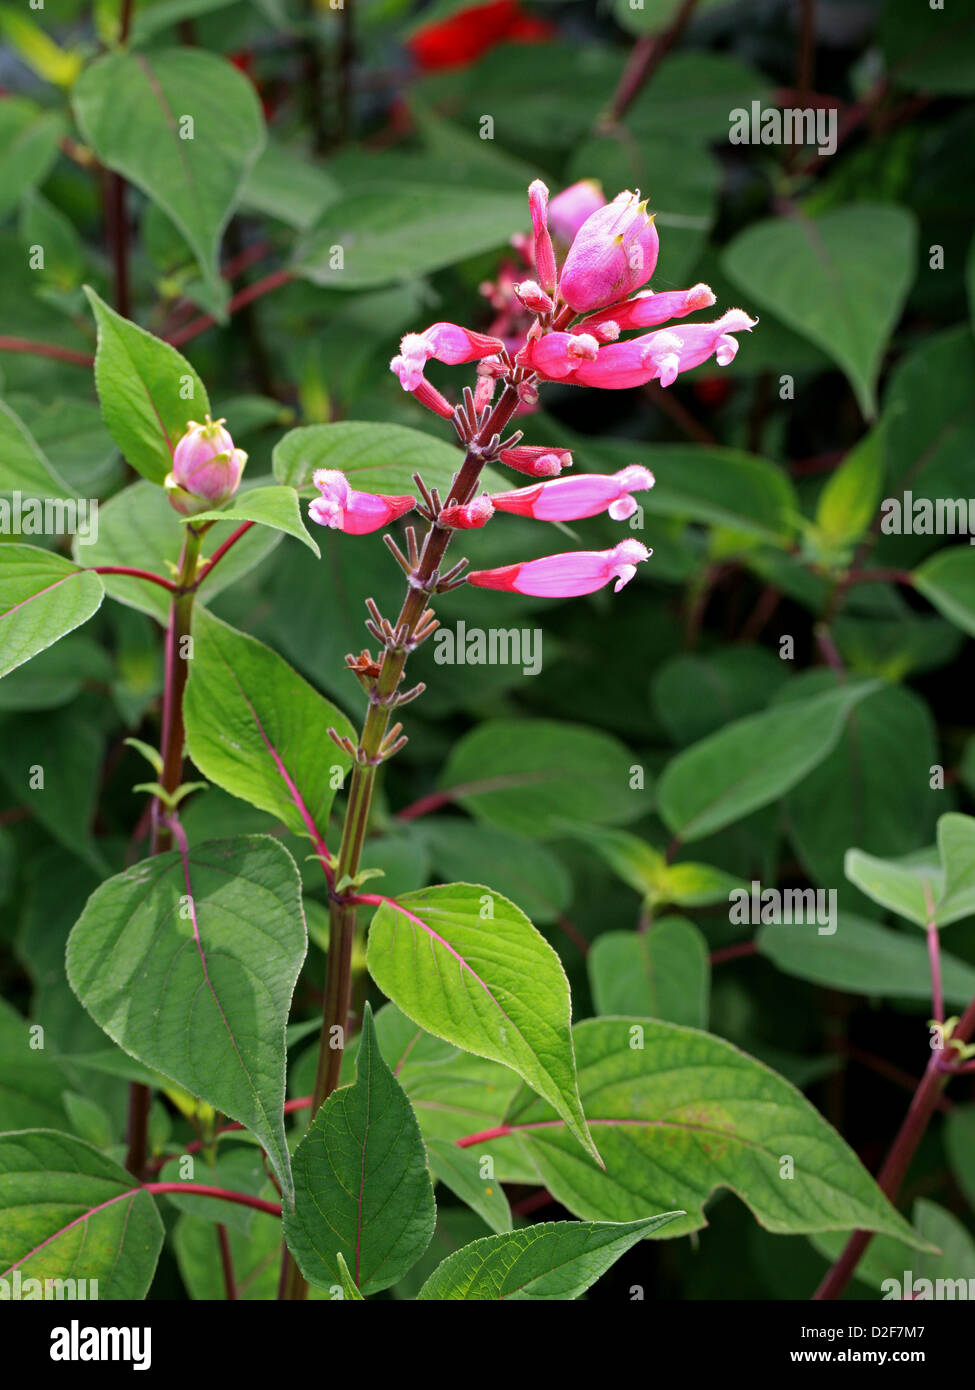 Rose Blatt Salbei, Salvia Involucrata "Boutin", Lamiaceae. Mexiko. Stockfoto